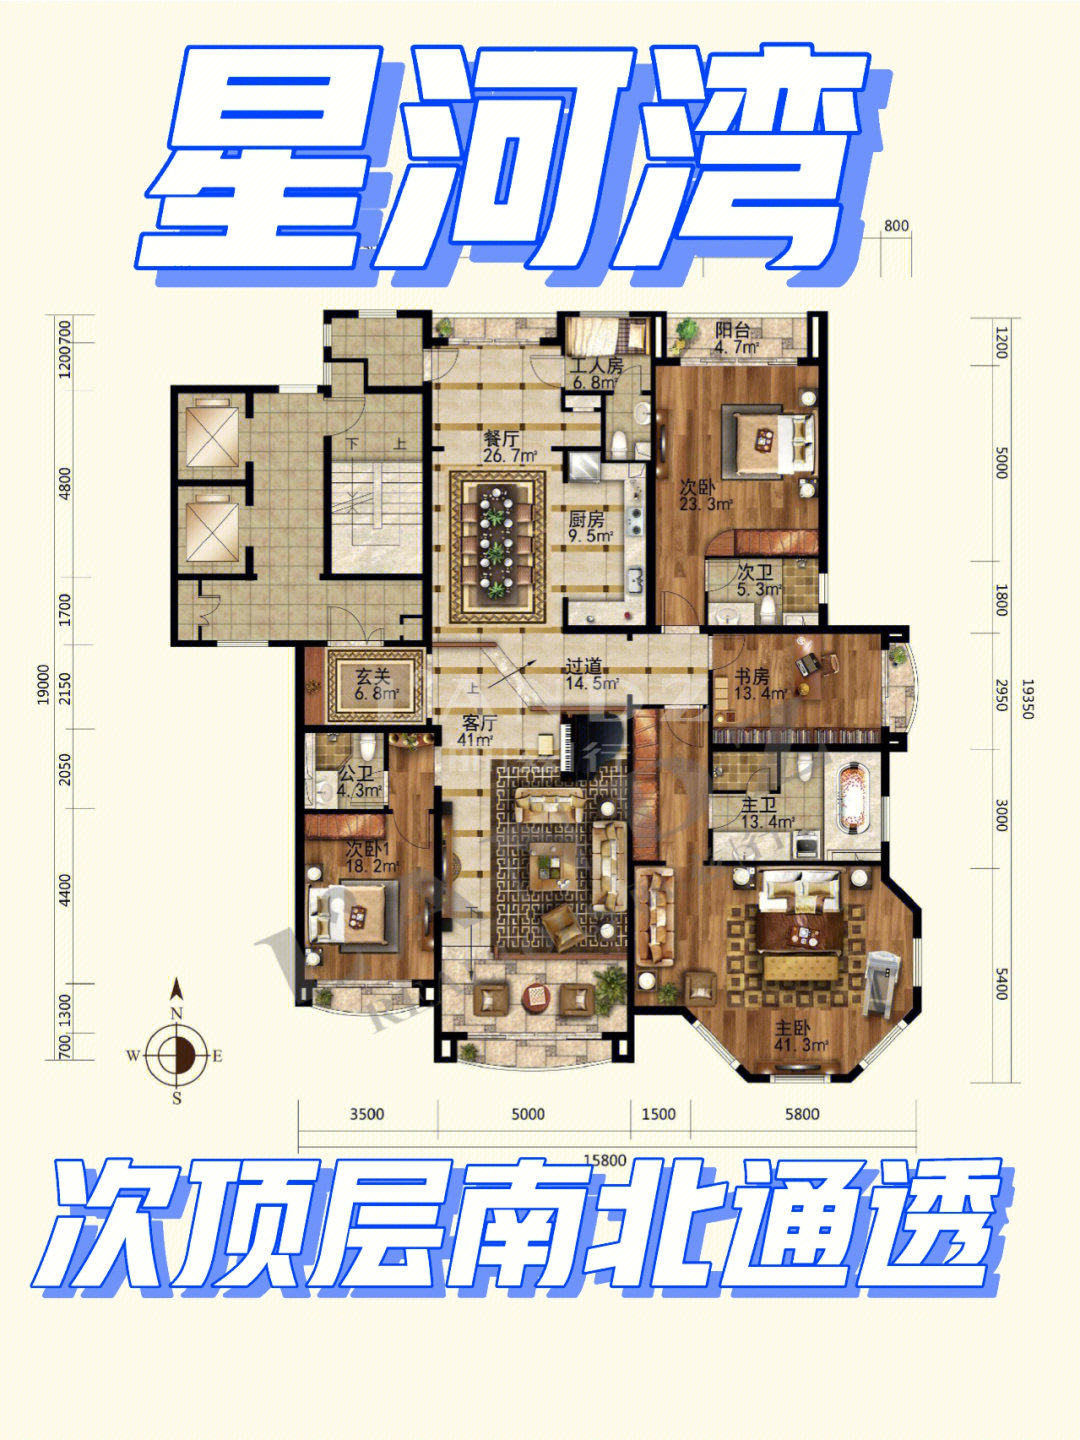 72平米房本居室:3室2厅1厨4卫1书房户型描述①可以做星河湾4居室的好